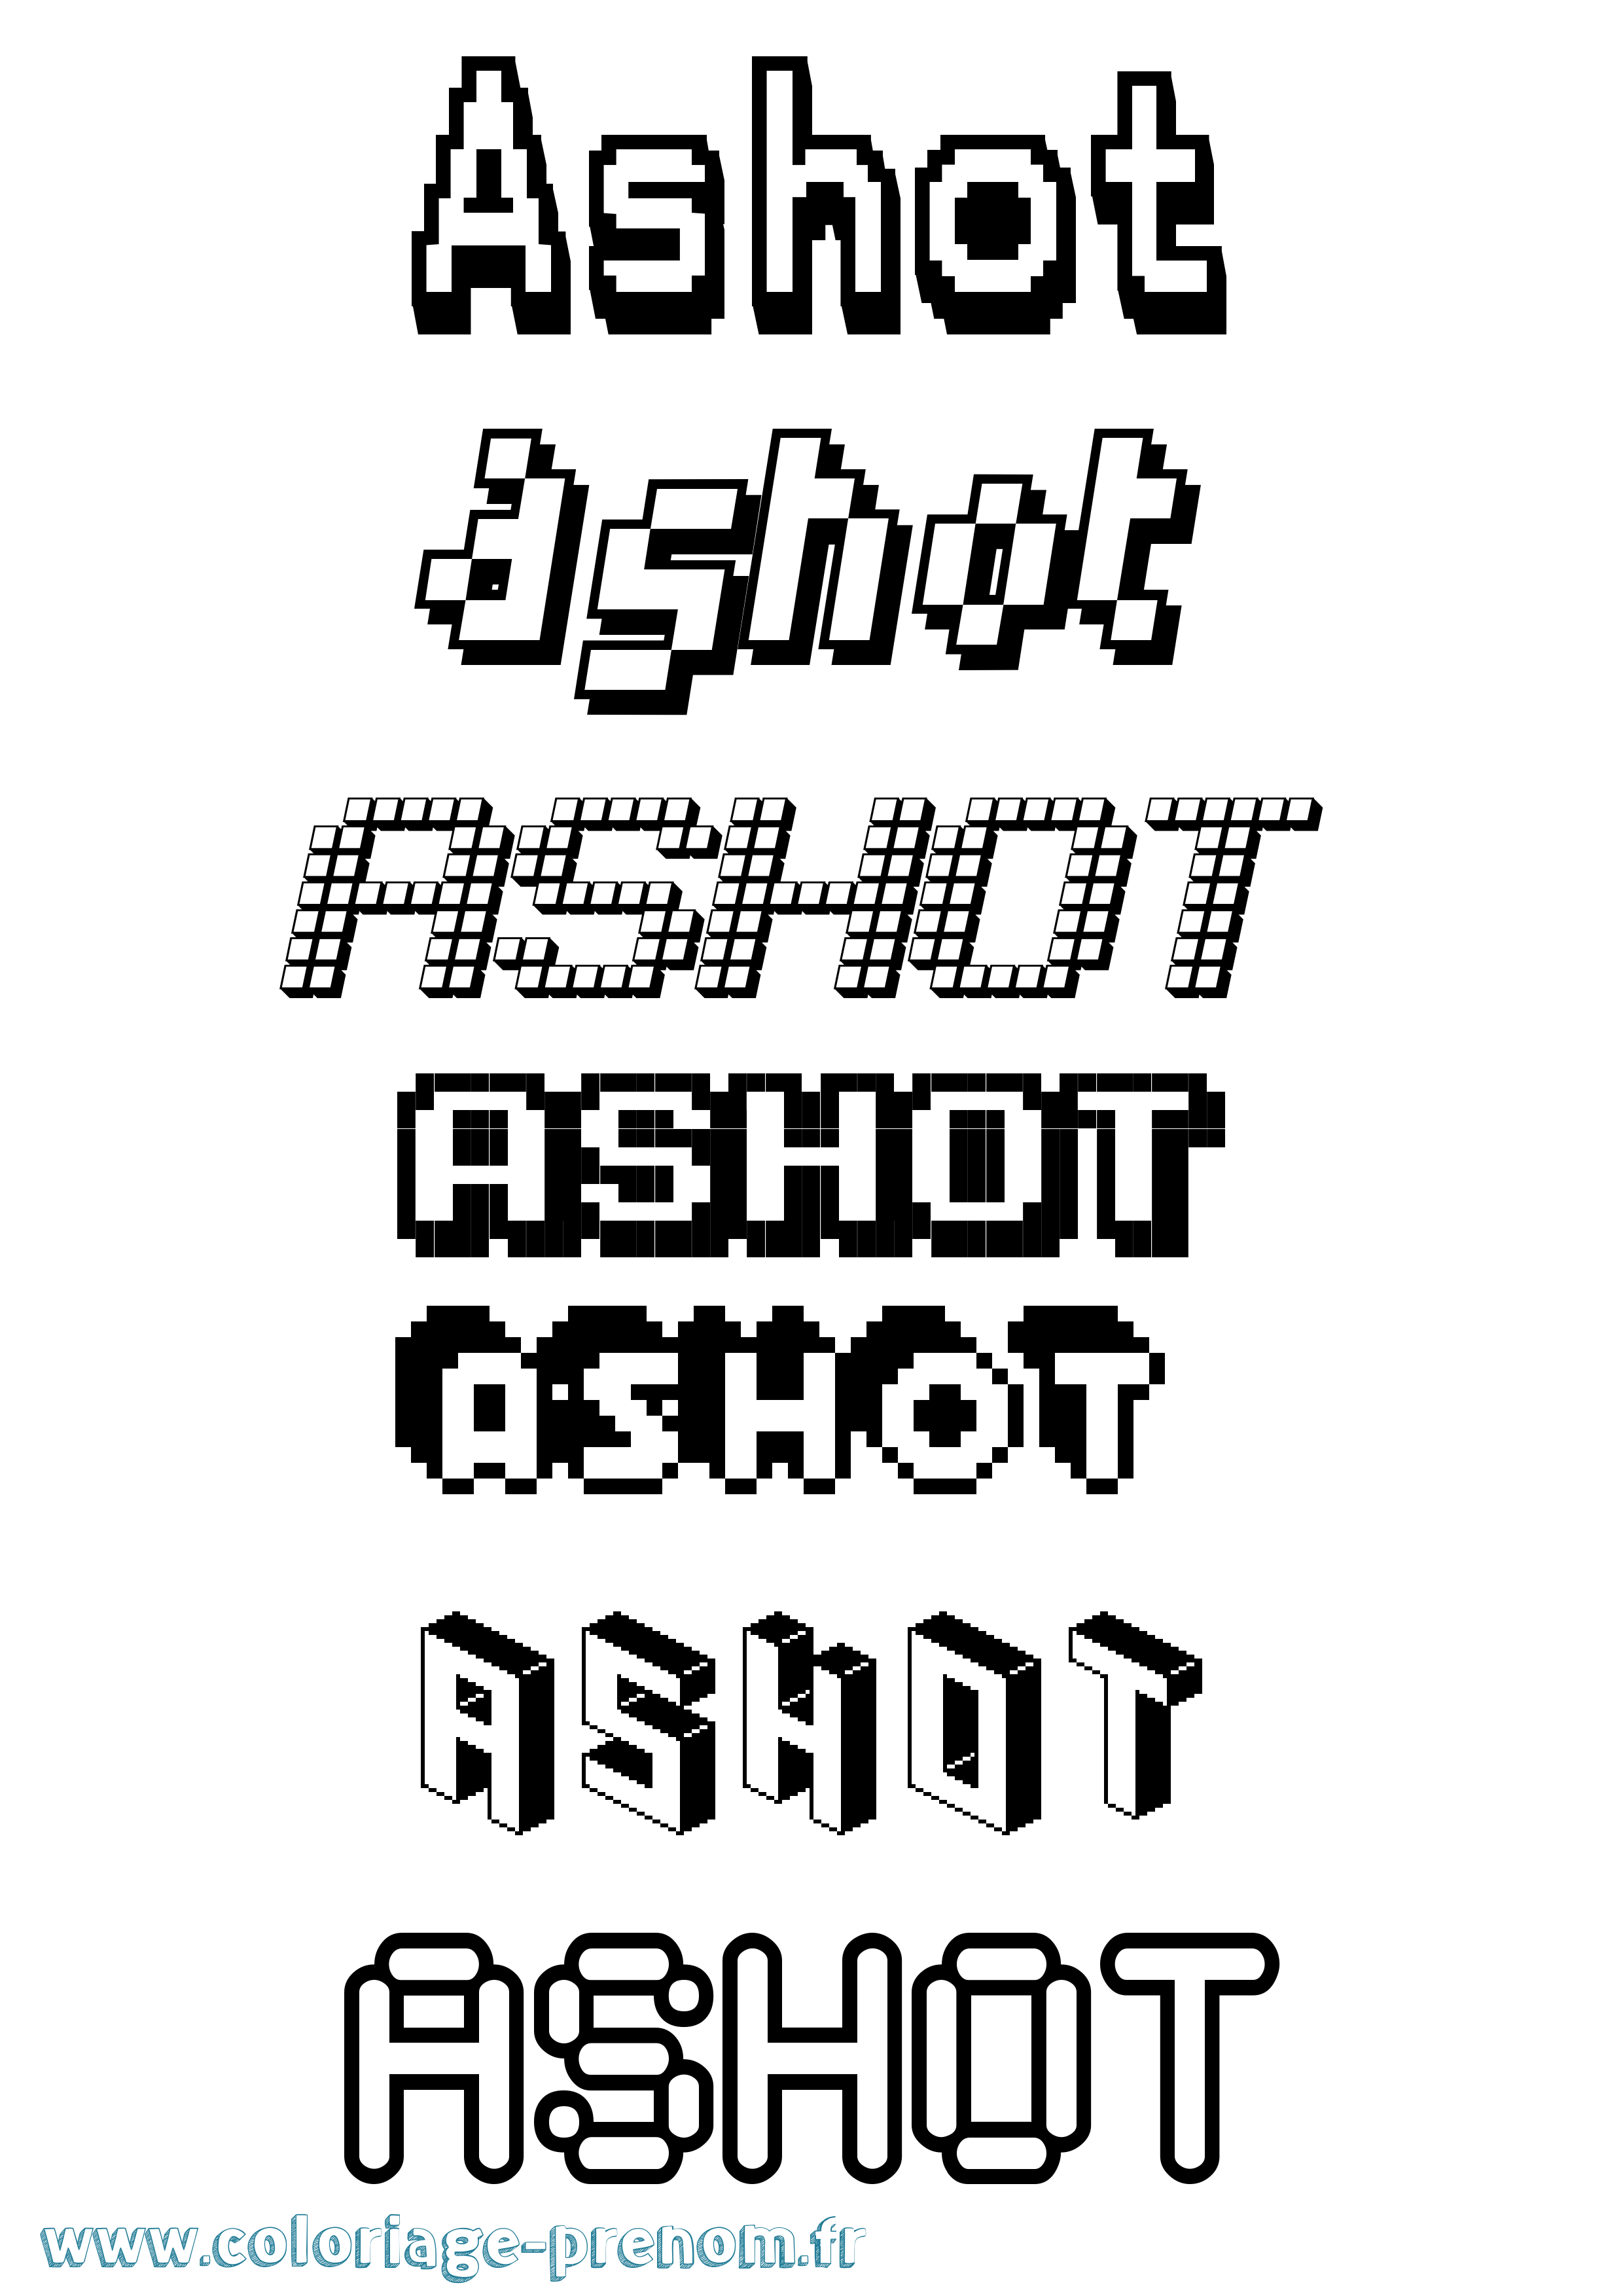 Coloriage prénom Ashot Pixel